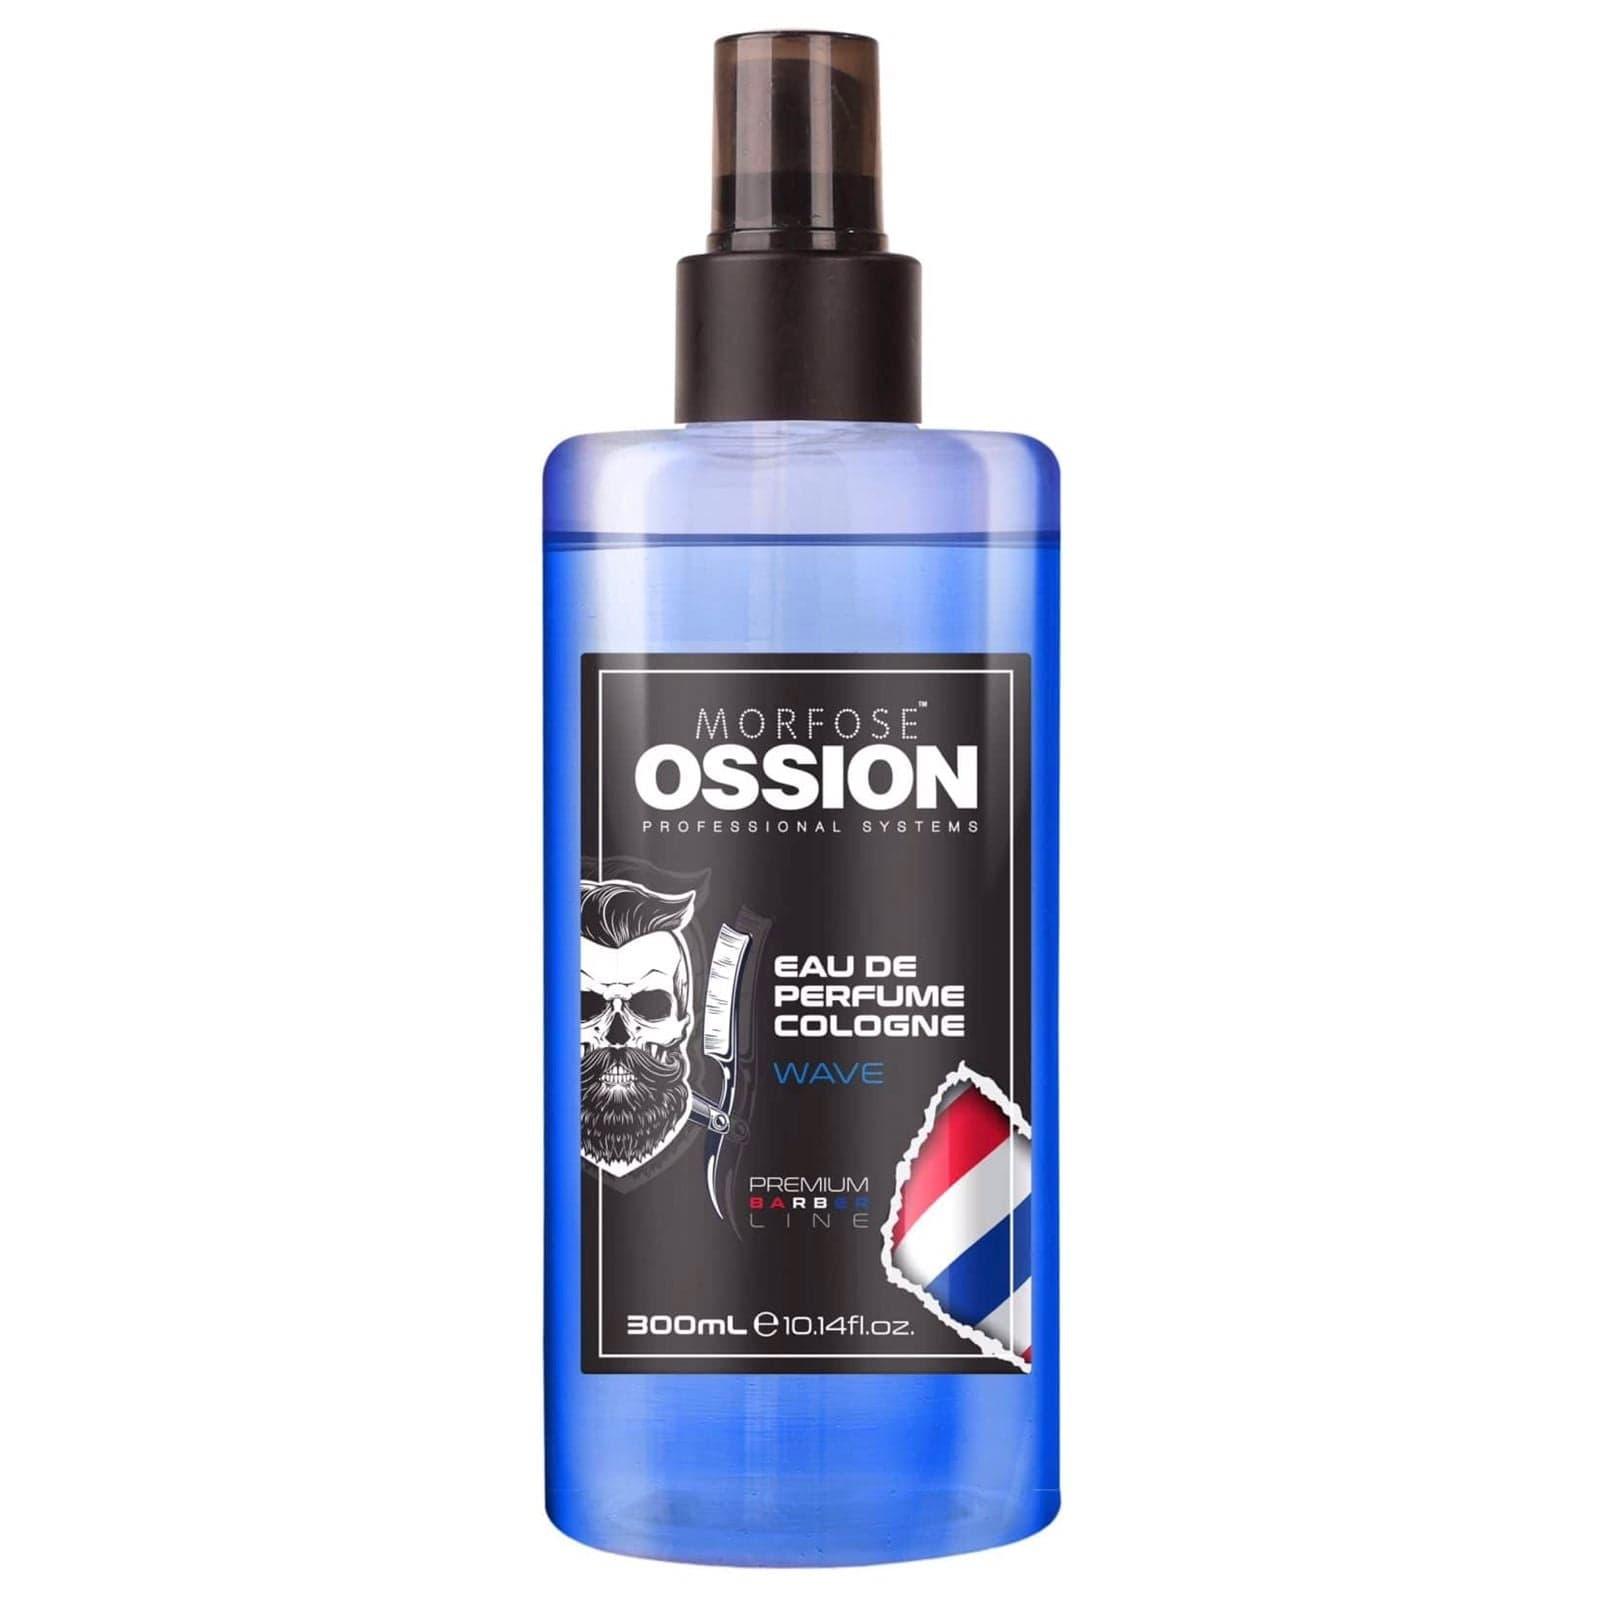 Morfose Ossion EAU De Perfume Cologne Wave 300ml